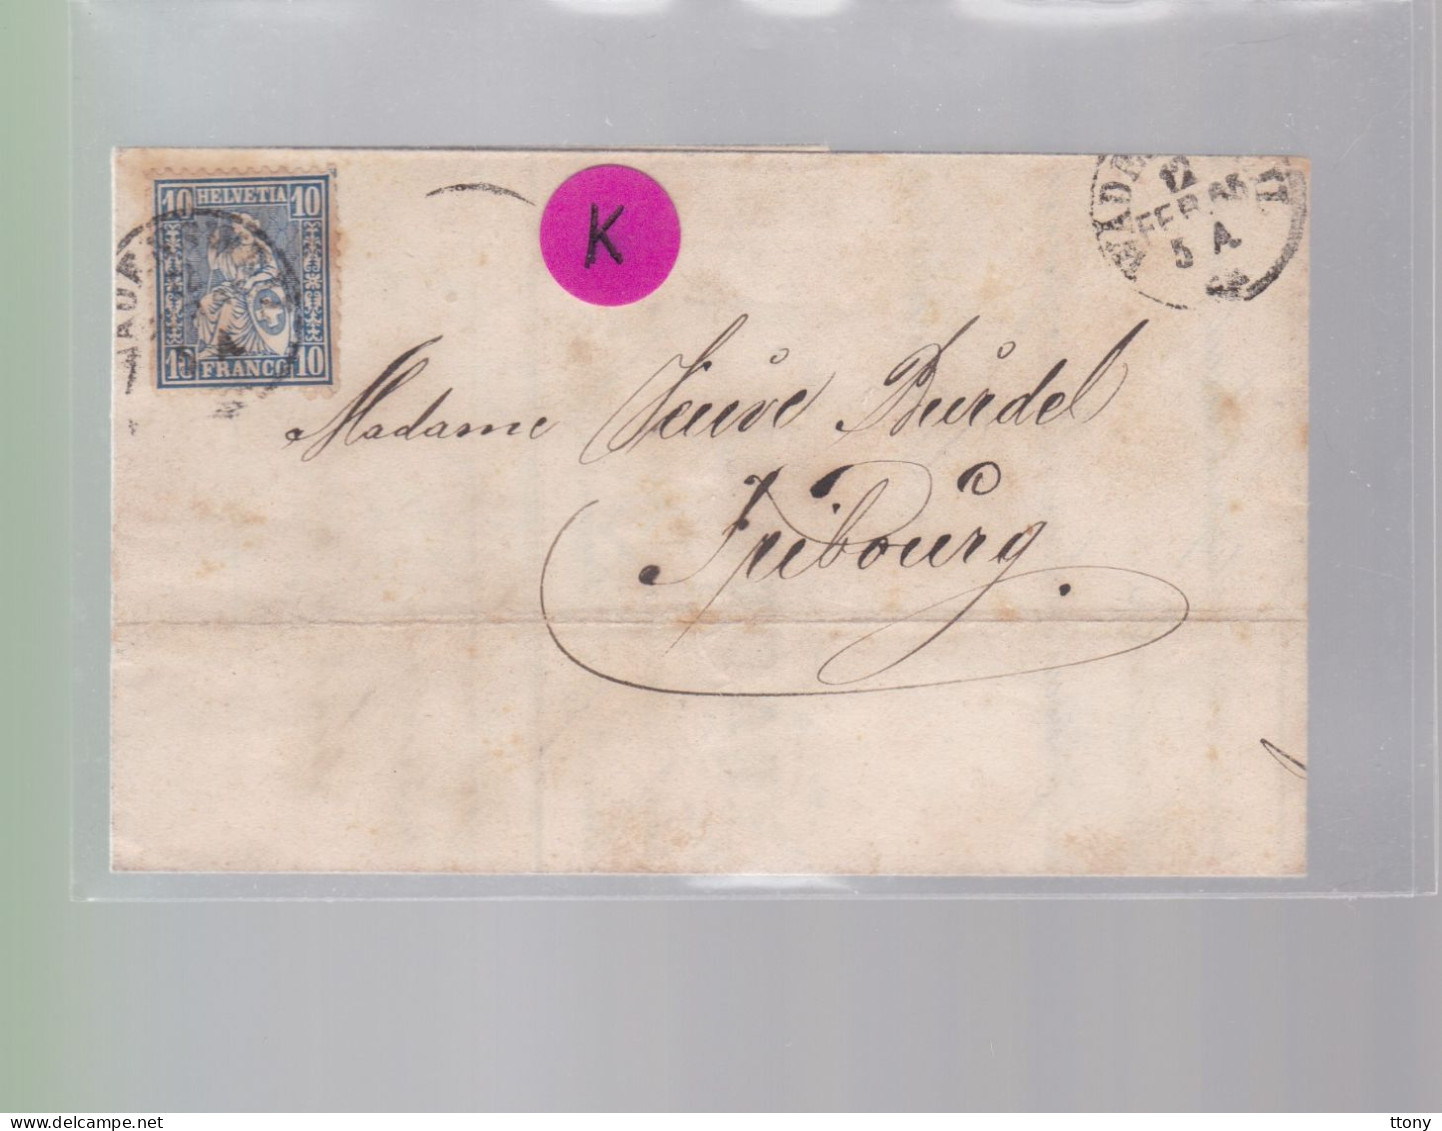 Un Timbre N° 31  10 C  Franco  Suisse  Sur Lettre   Facture  Wadenschweil    Février  1865   Destination Fribourg - Storia Postale